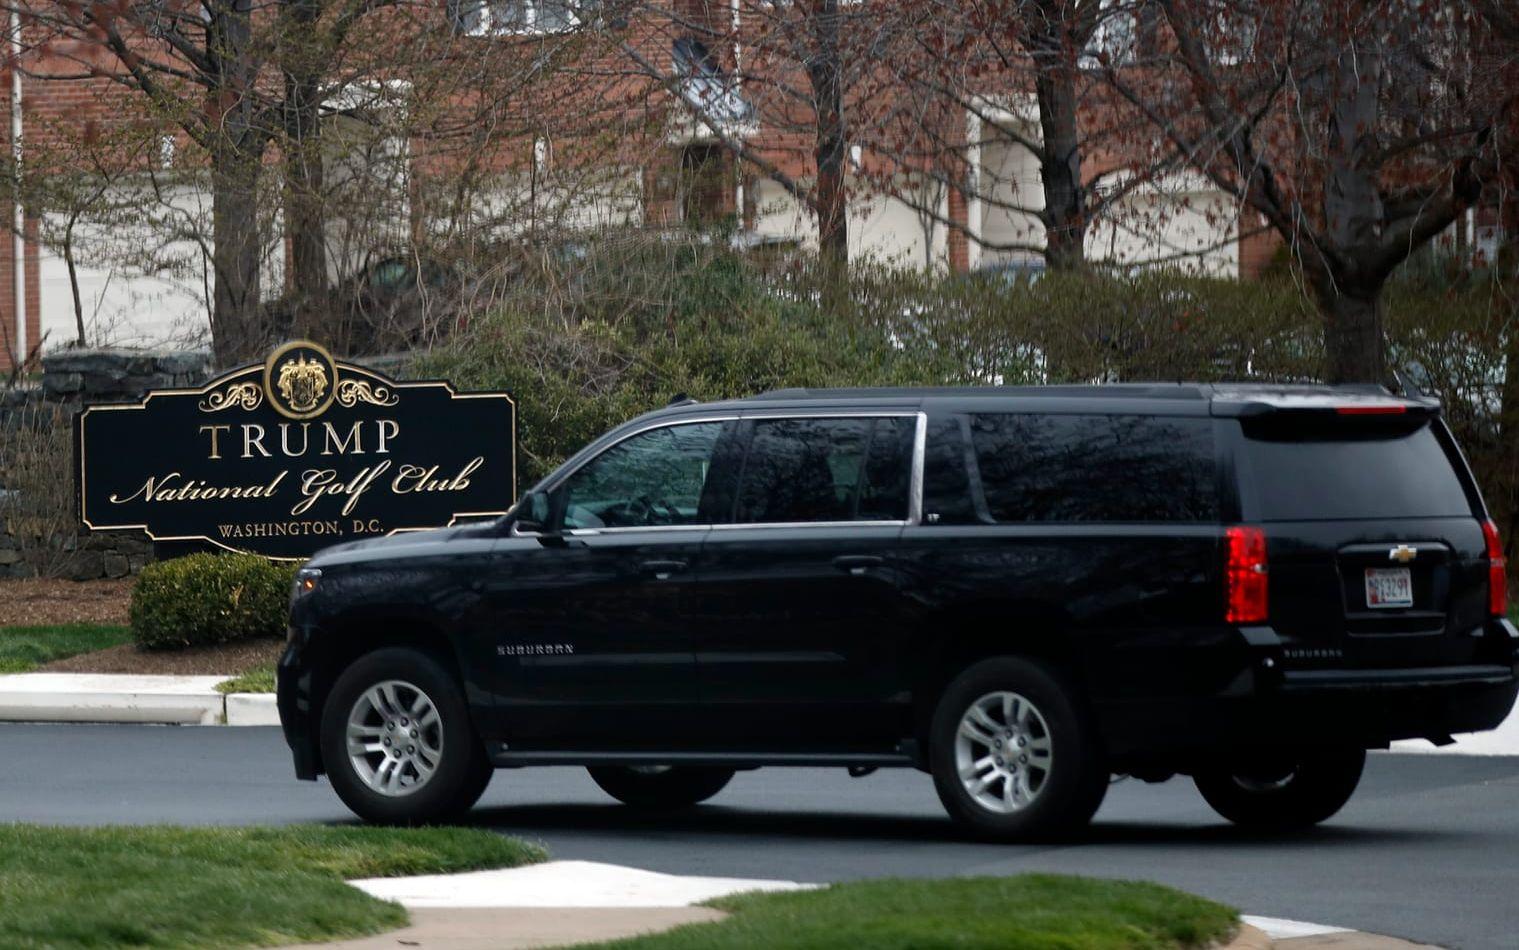 26 MARS: Trump gjorde inga offentliga framträdanden denna dag. Här syns hans kortege på väg till en av hans golfklubbar i Virginia. Foto: TT